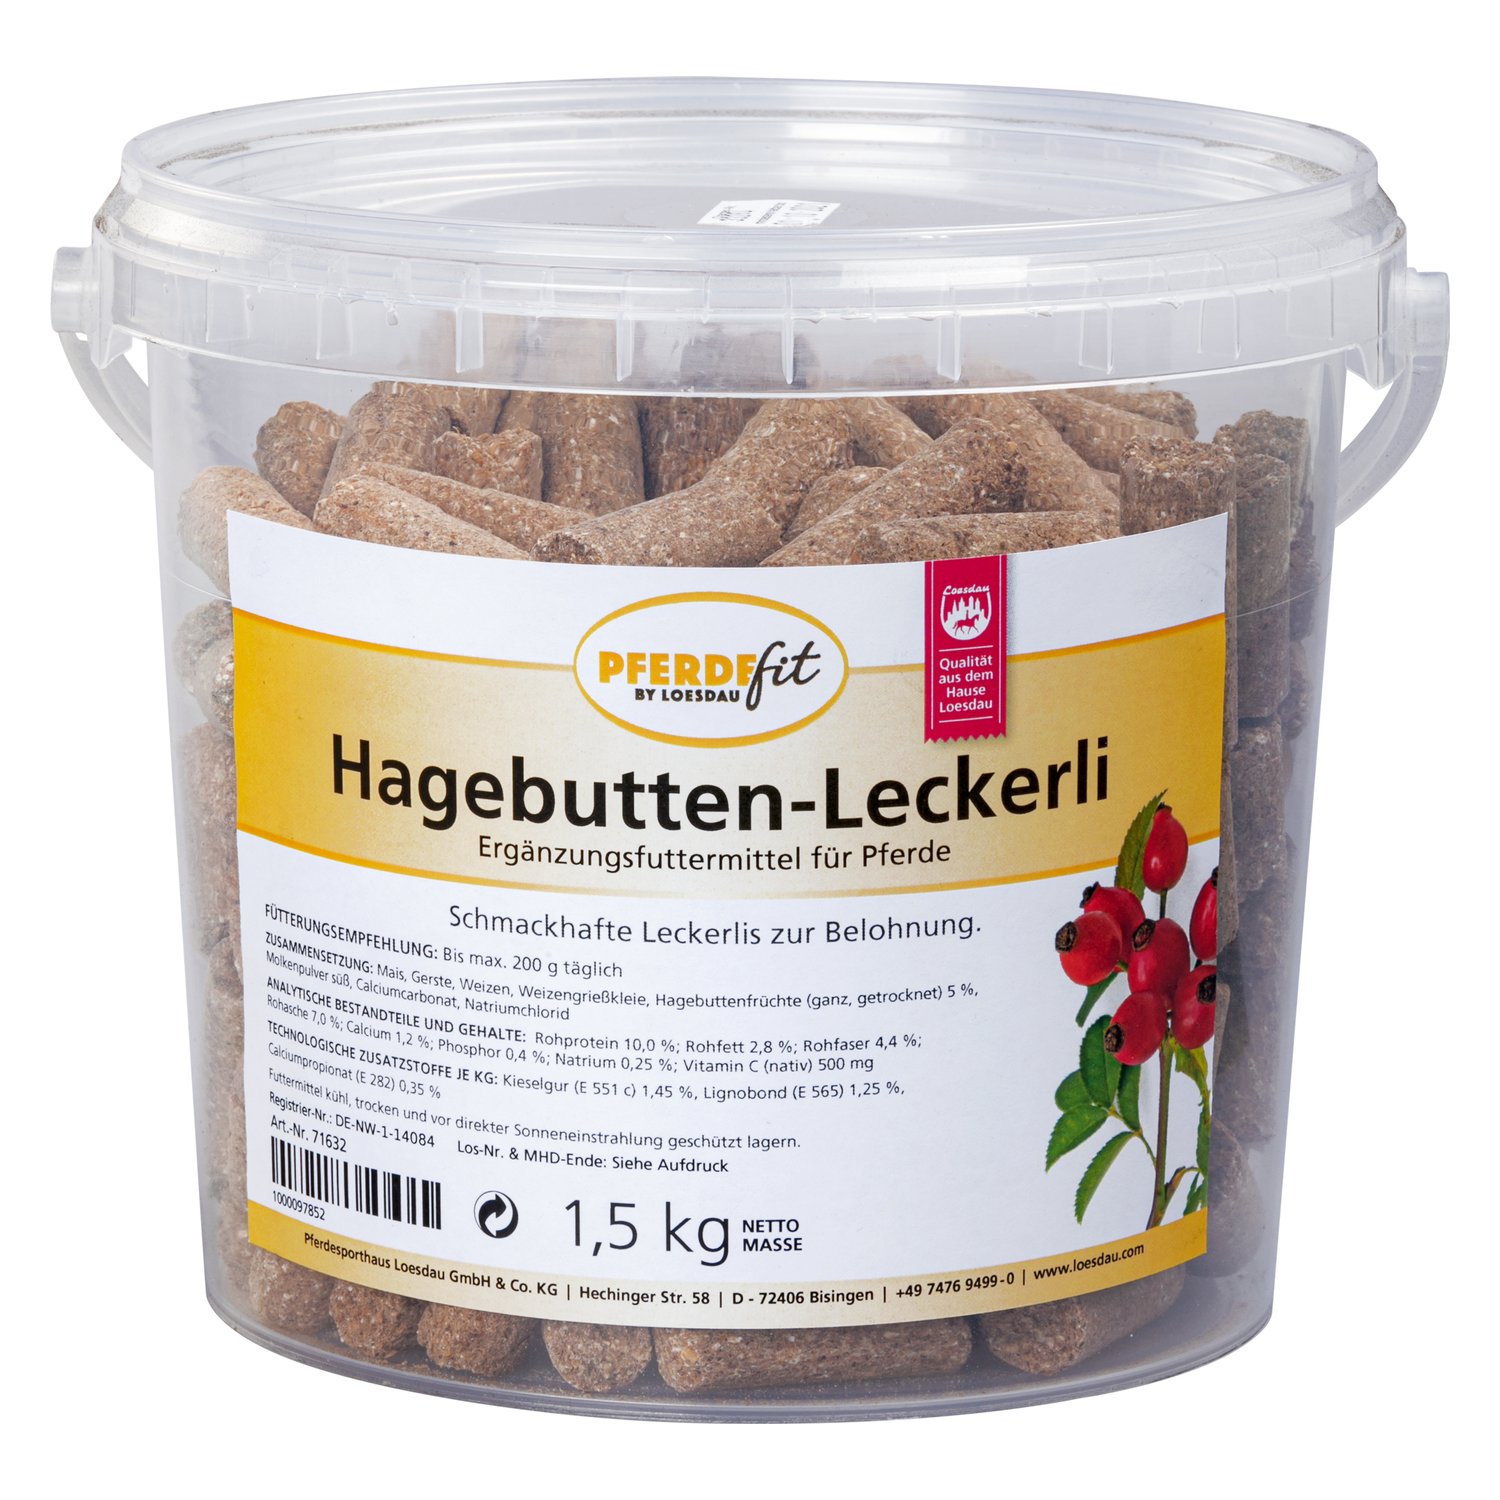 PFERDEfit by Loesdau Hagebutten-Leckerli 1,5 kg